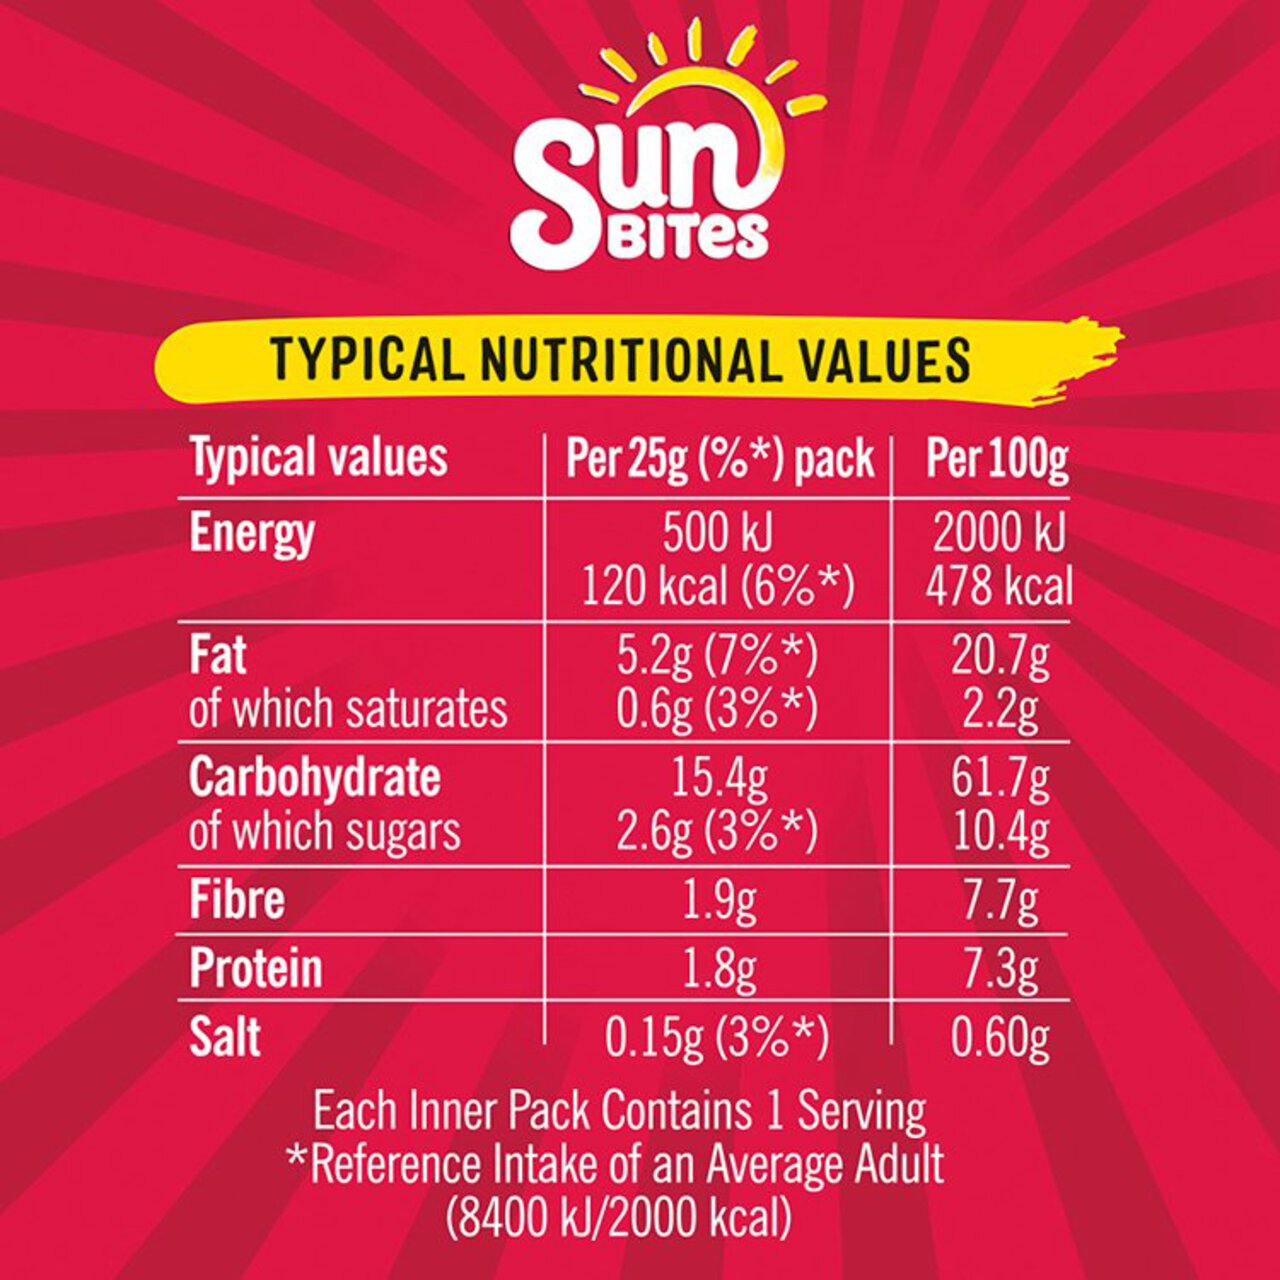 SunBites Sweet Chilli Multigrain Snacks 6 per pack